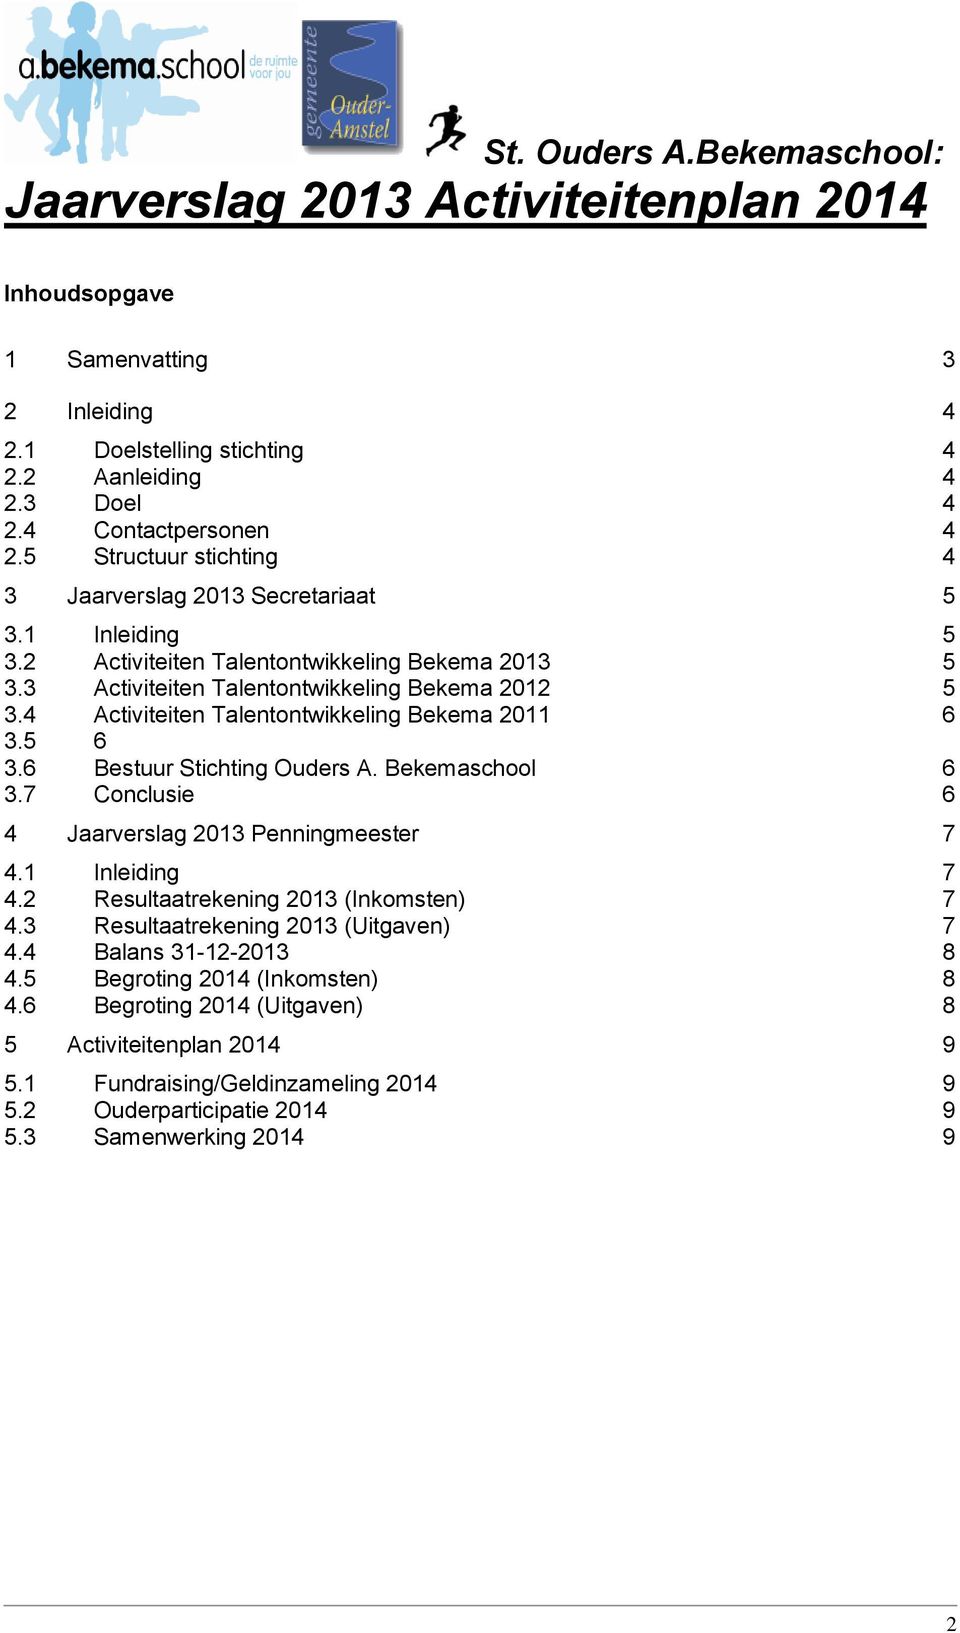 6 Bestuur Stichting Ouders A. Bekemaschool 6 3.7 Conclusie 6 4 Jaarverslag 2013 Penningmeester 7 4.1 Inleiding 7 4.2 Resultaatrekening 2013 (Inkomsten) 7 4.